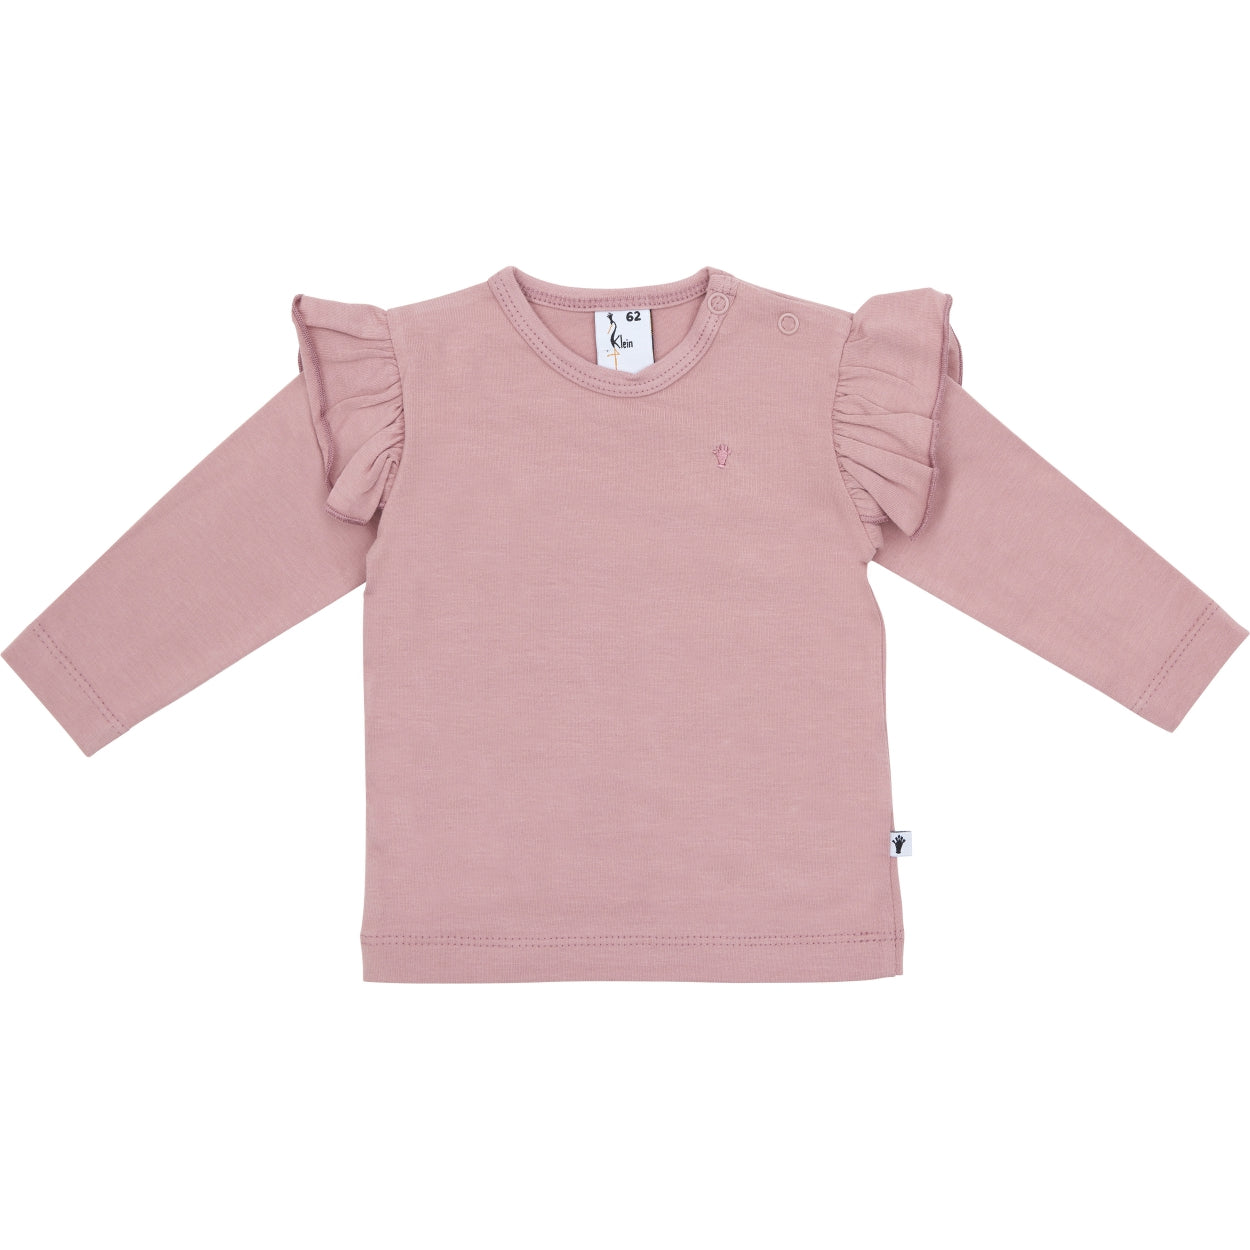 Meisjes Shirt Ruffle van Klein Baby in de kleur Dusty Rose in maat 86.